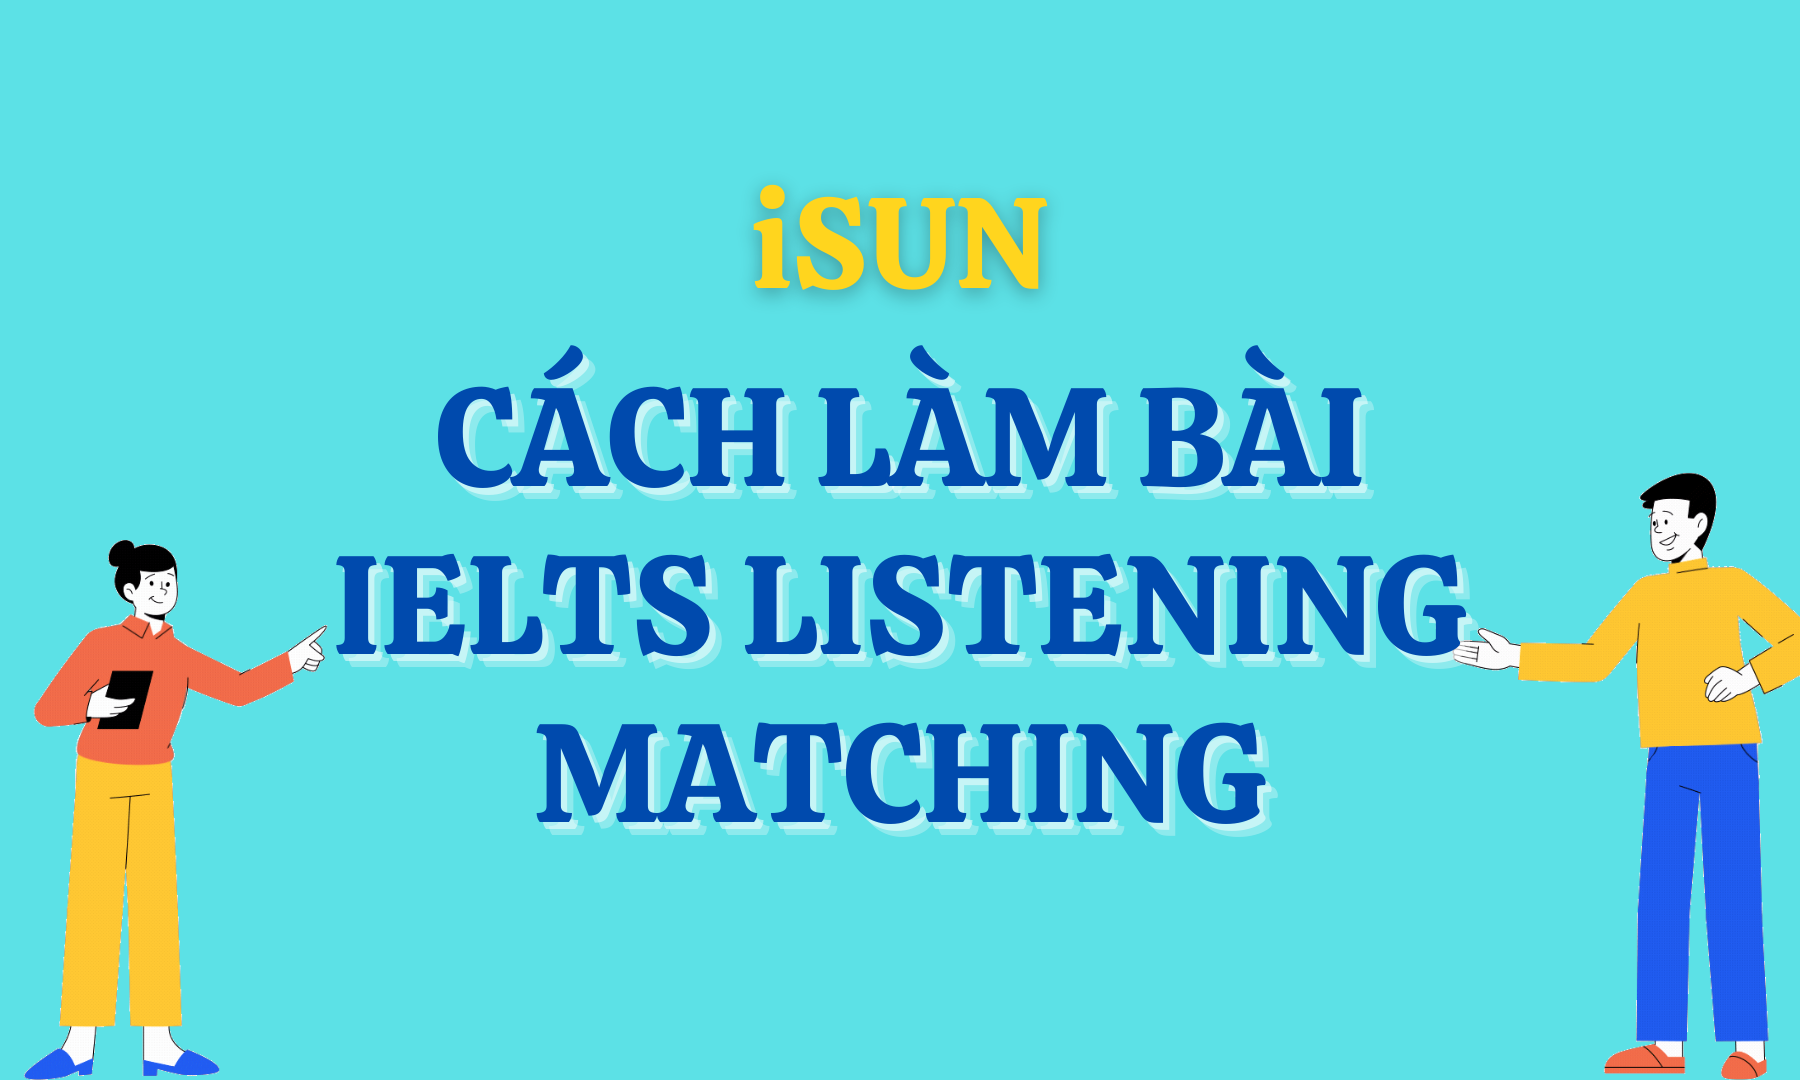 CÁCH LÀM BÀI IELTS LISTENING MATCHING